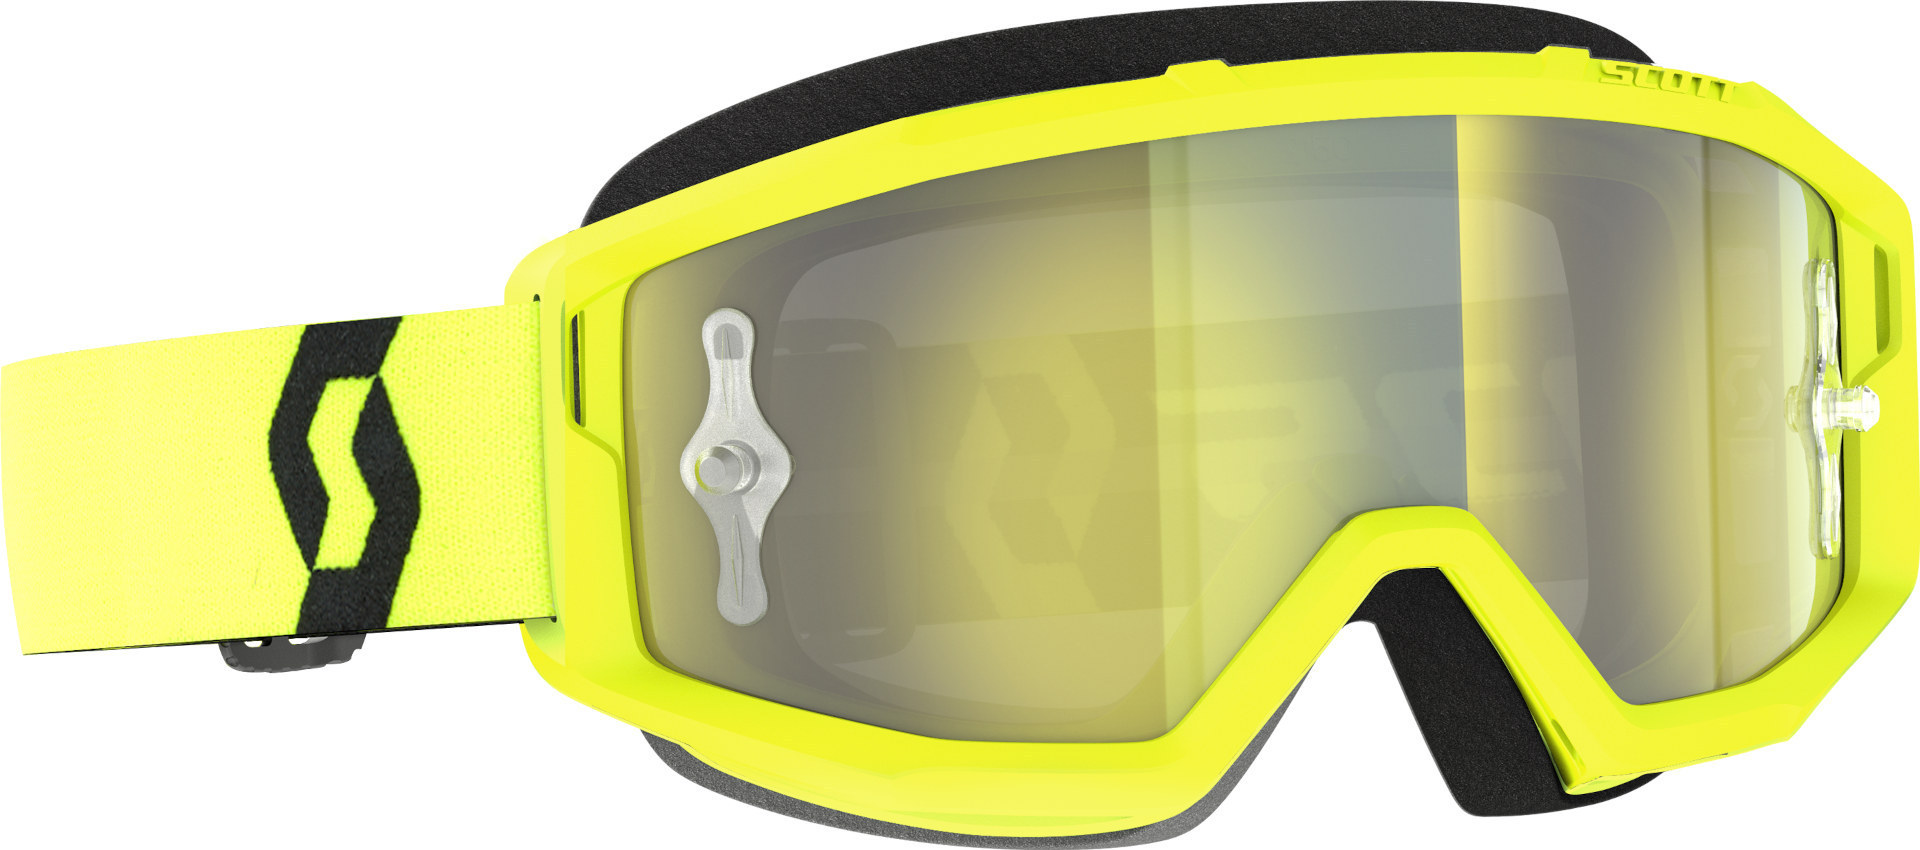 Мотоциклетные очки Scott Primal с логотипом, желтый/черный очки champion c1006 50 г желтый черный